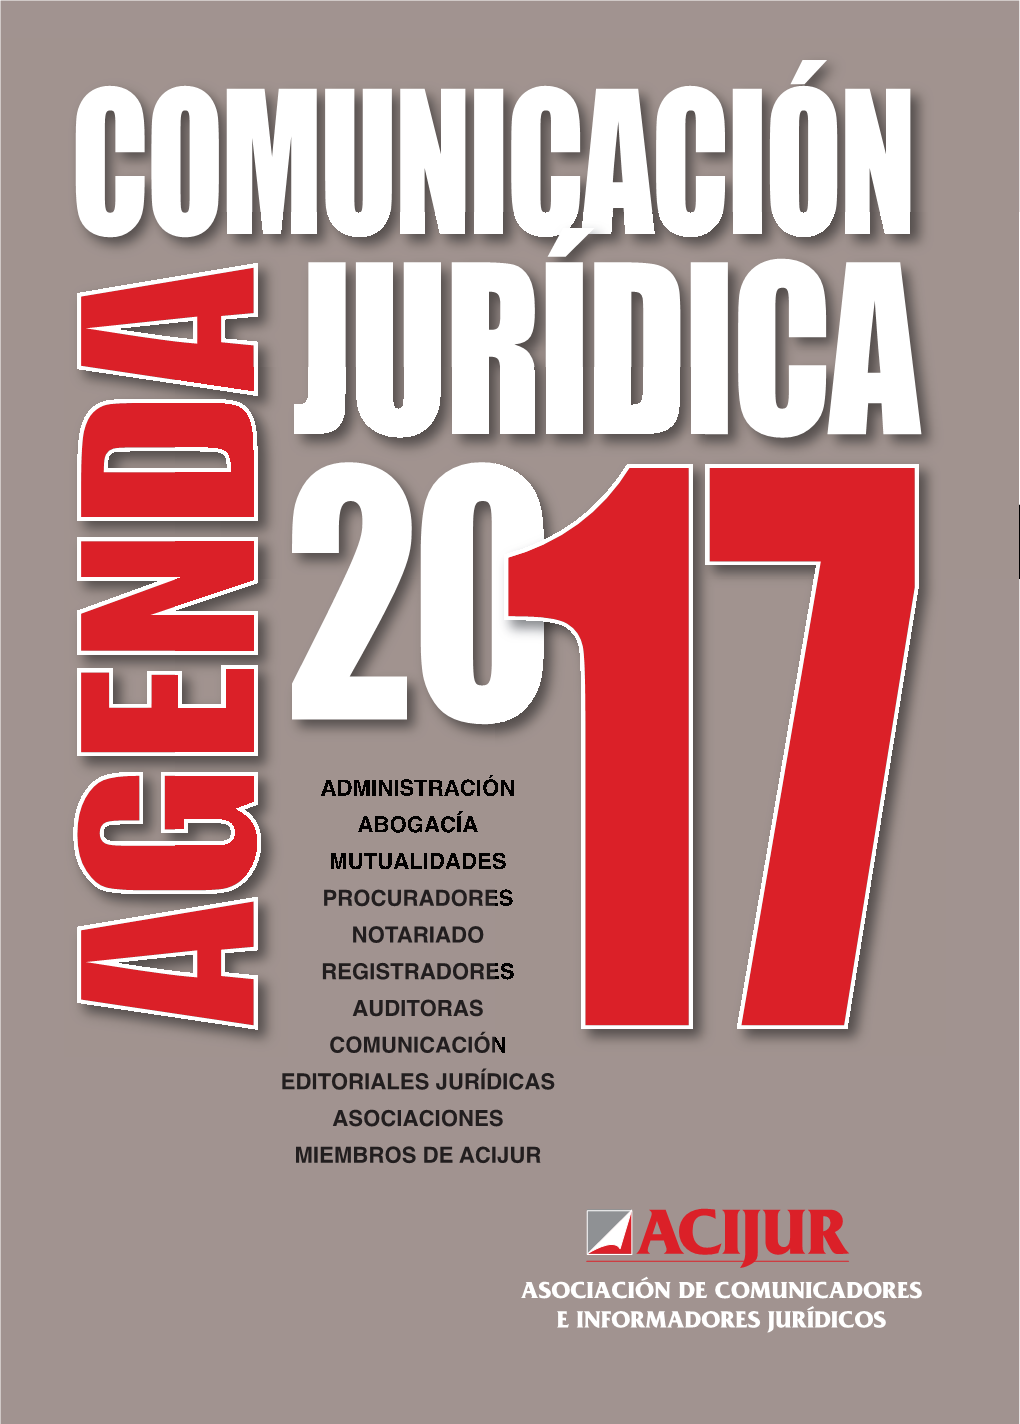 Agenda De La Comunicación Jurídica 2017 a Las Siguientes Entidades